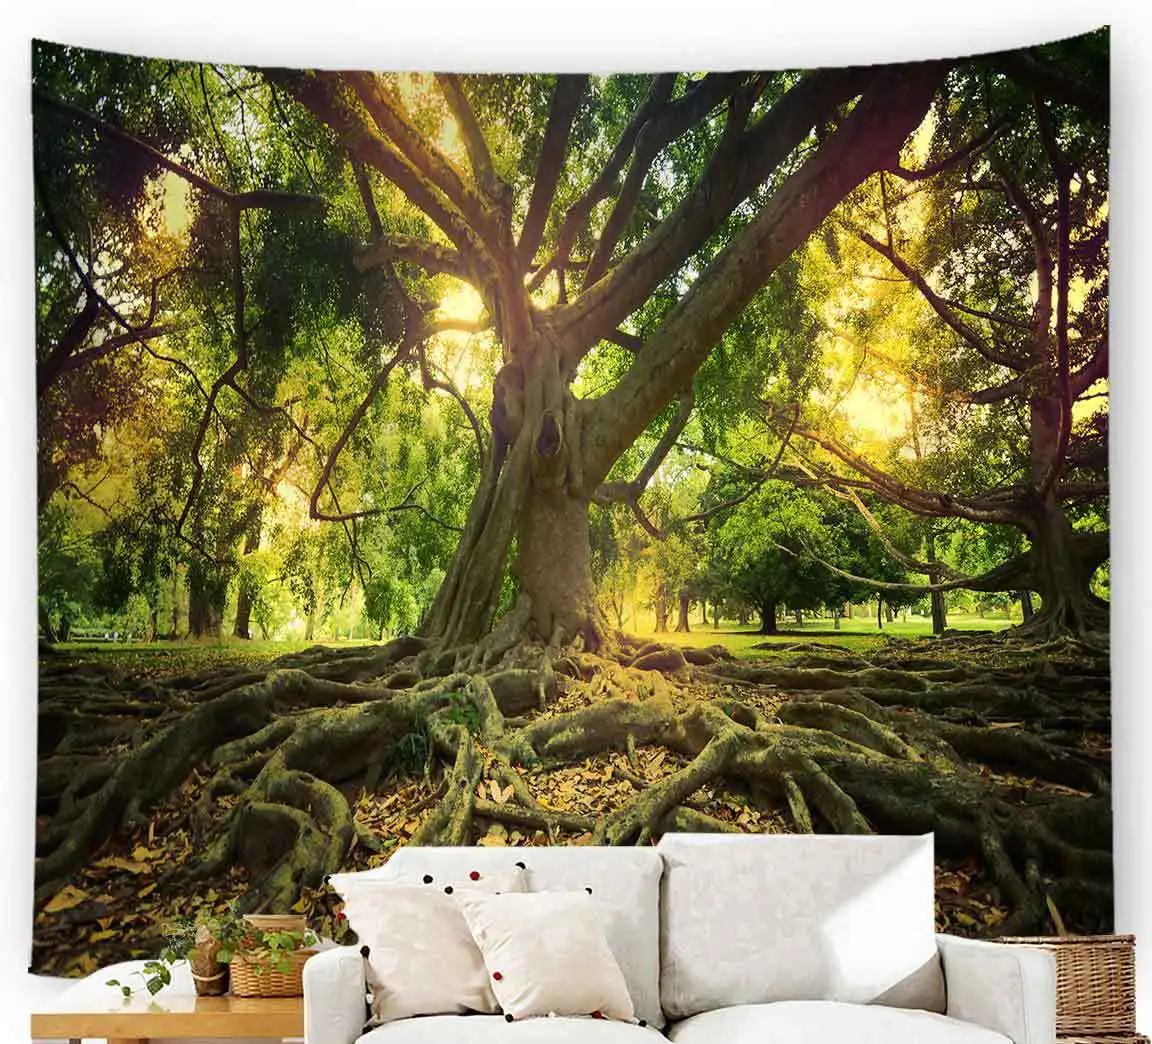 

МАНДАЛА ГОБЕЛЕН с изображением деревьев настенная Эстетическая Осенняя гобеленка лес пейзаж 3d психоделический ковер хиппи бохо Настенный декор для спальни